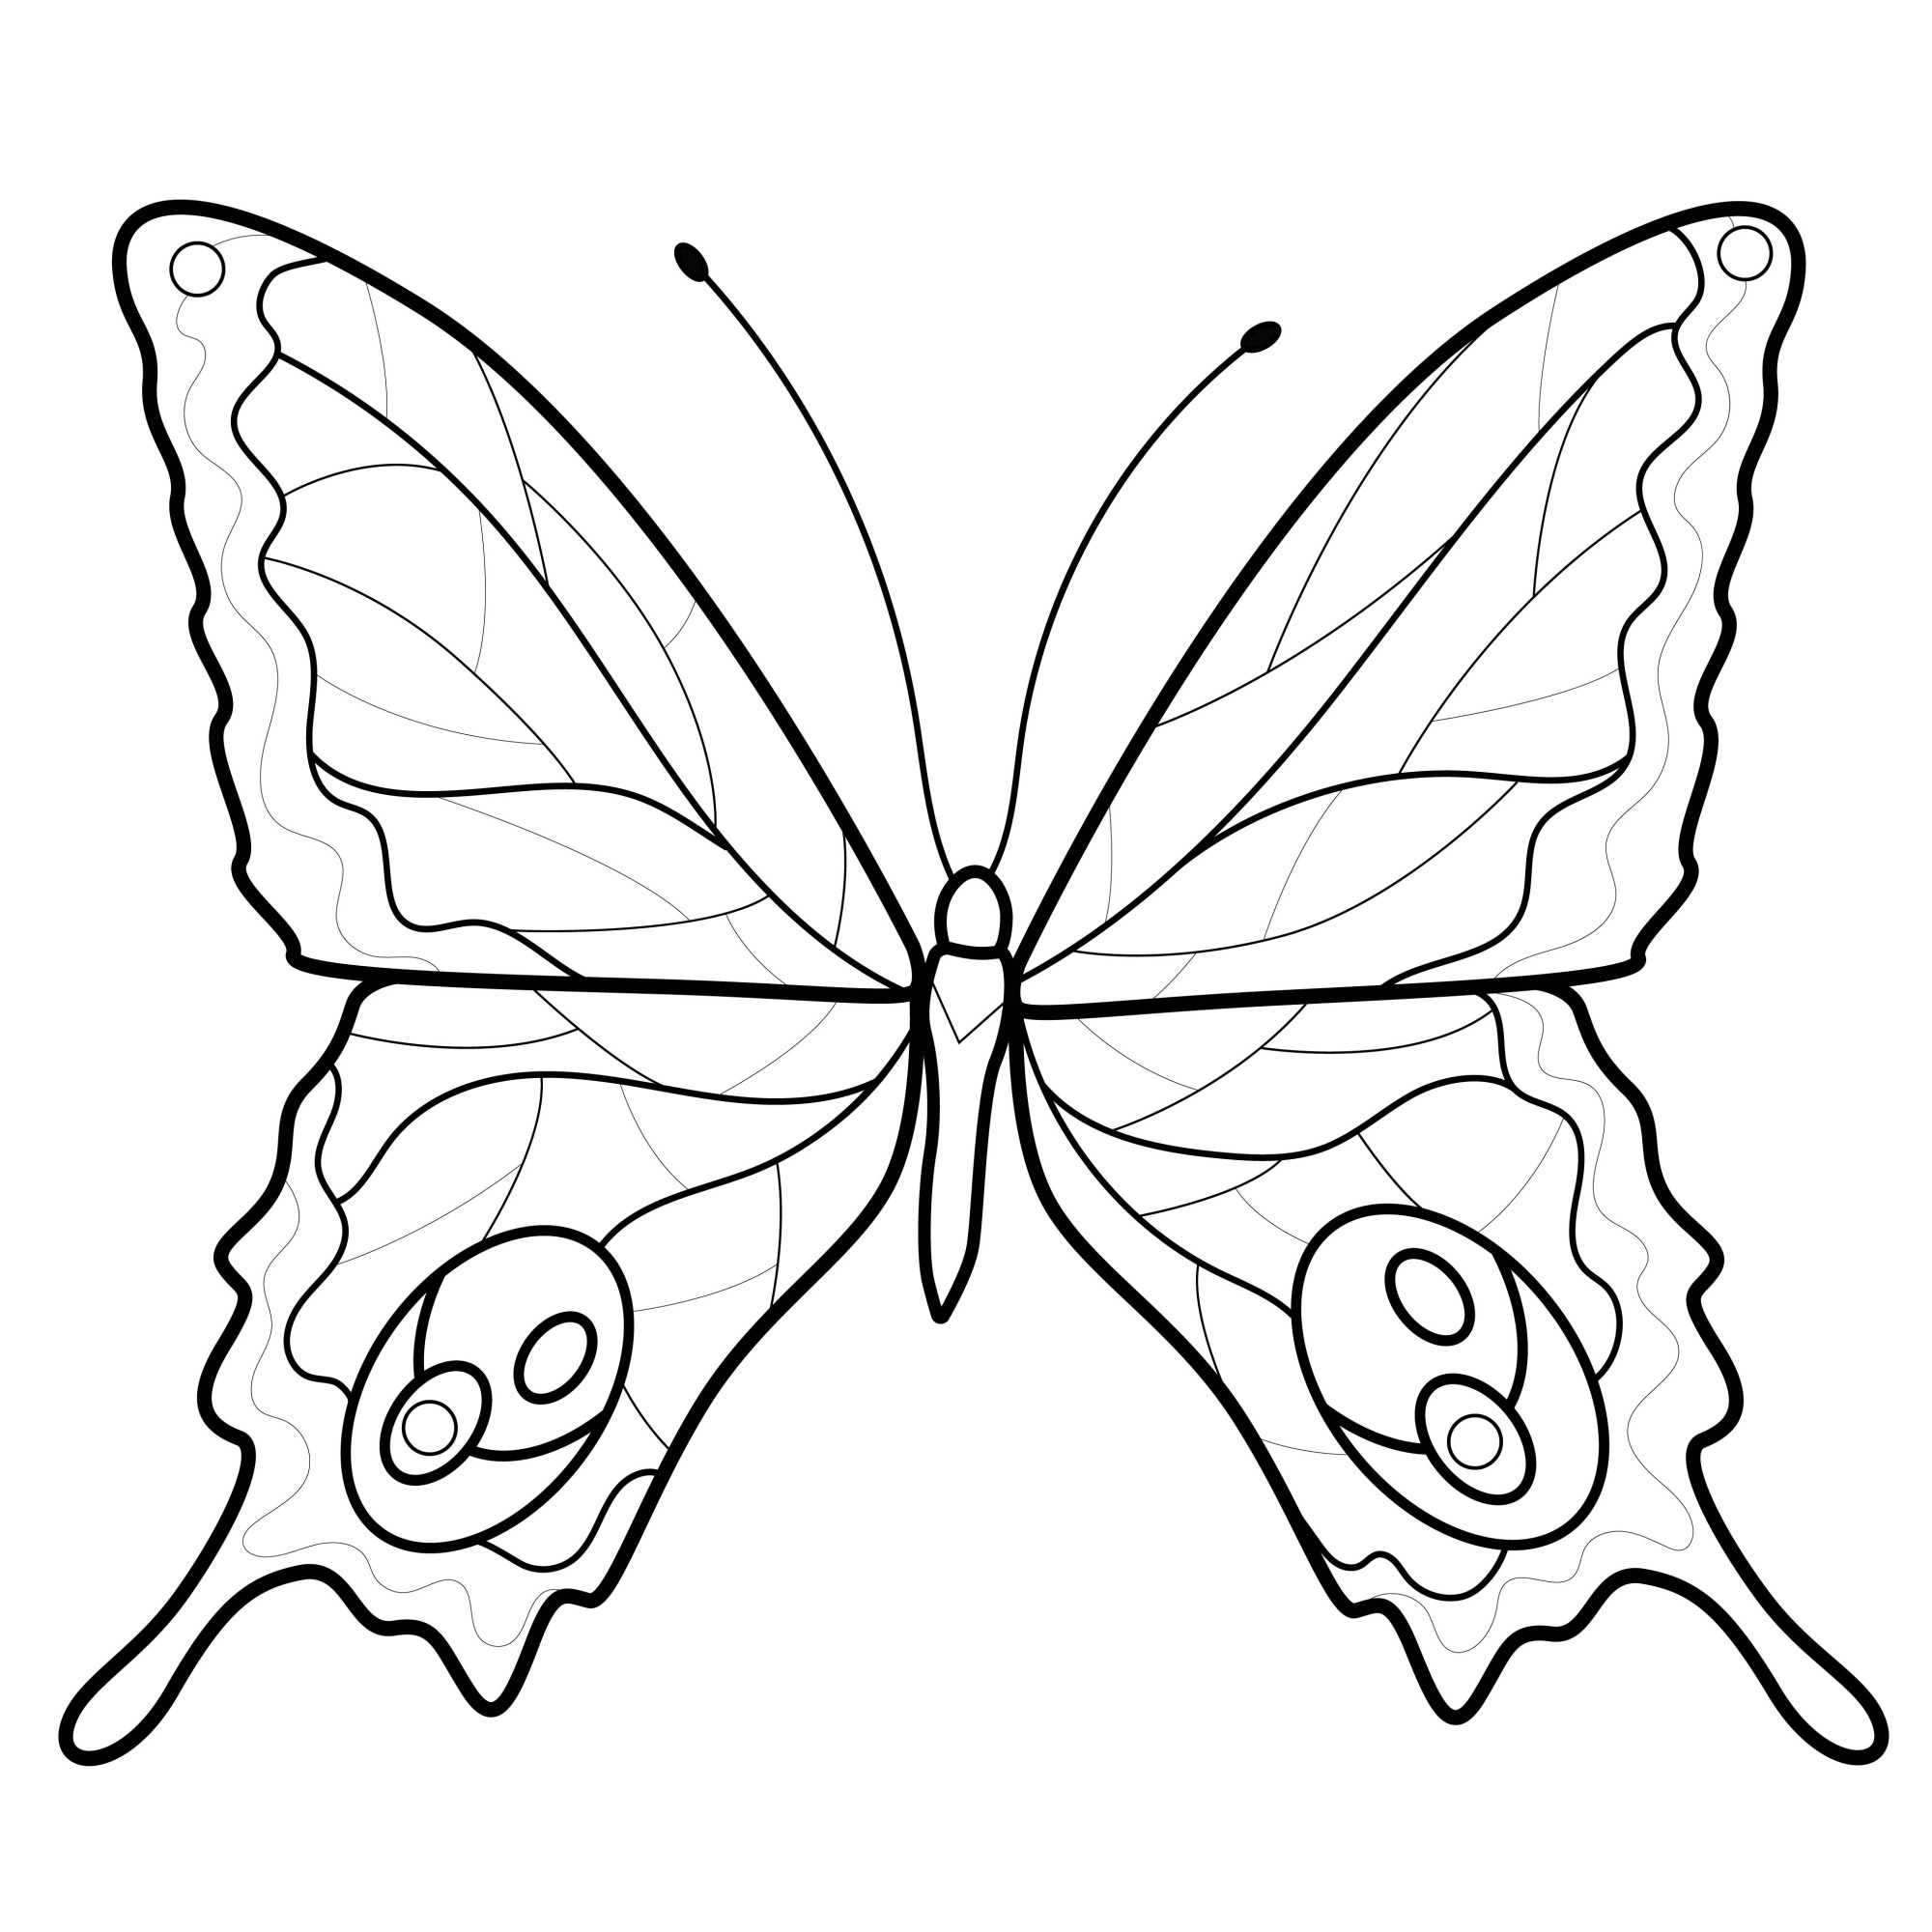 Раскраска для детей: прекрасная бабочка с длинными усиками